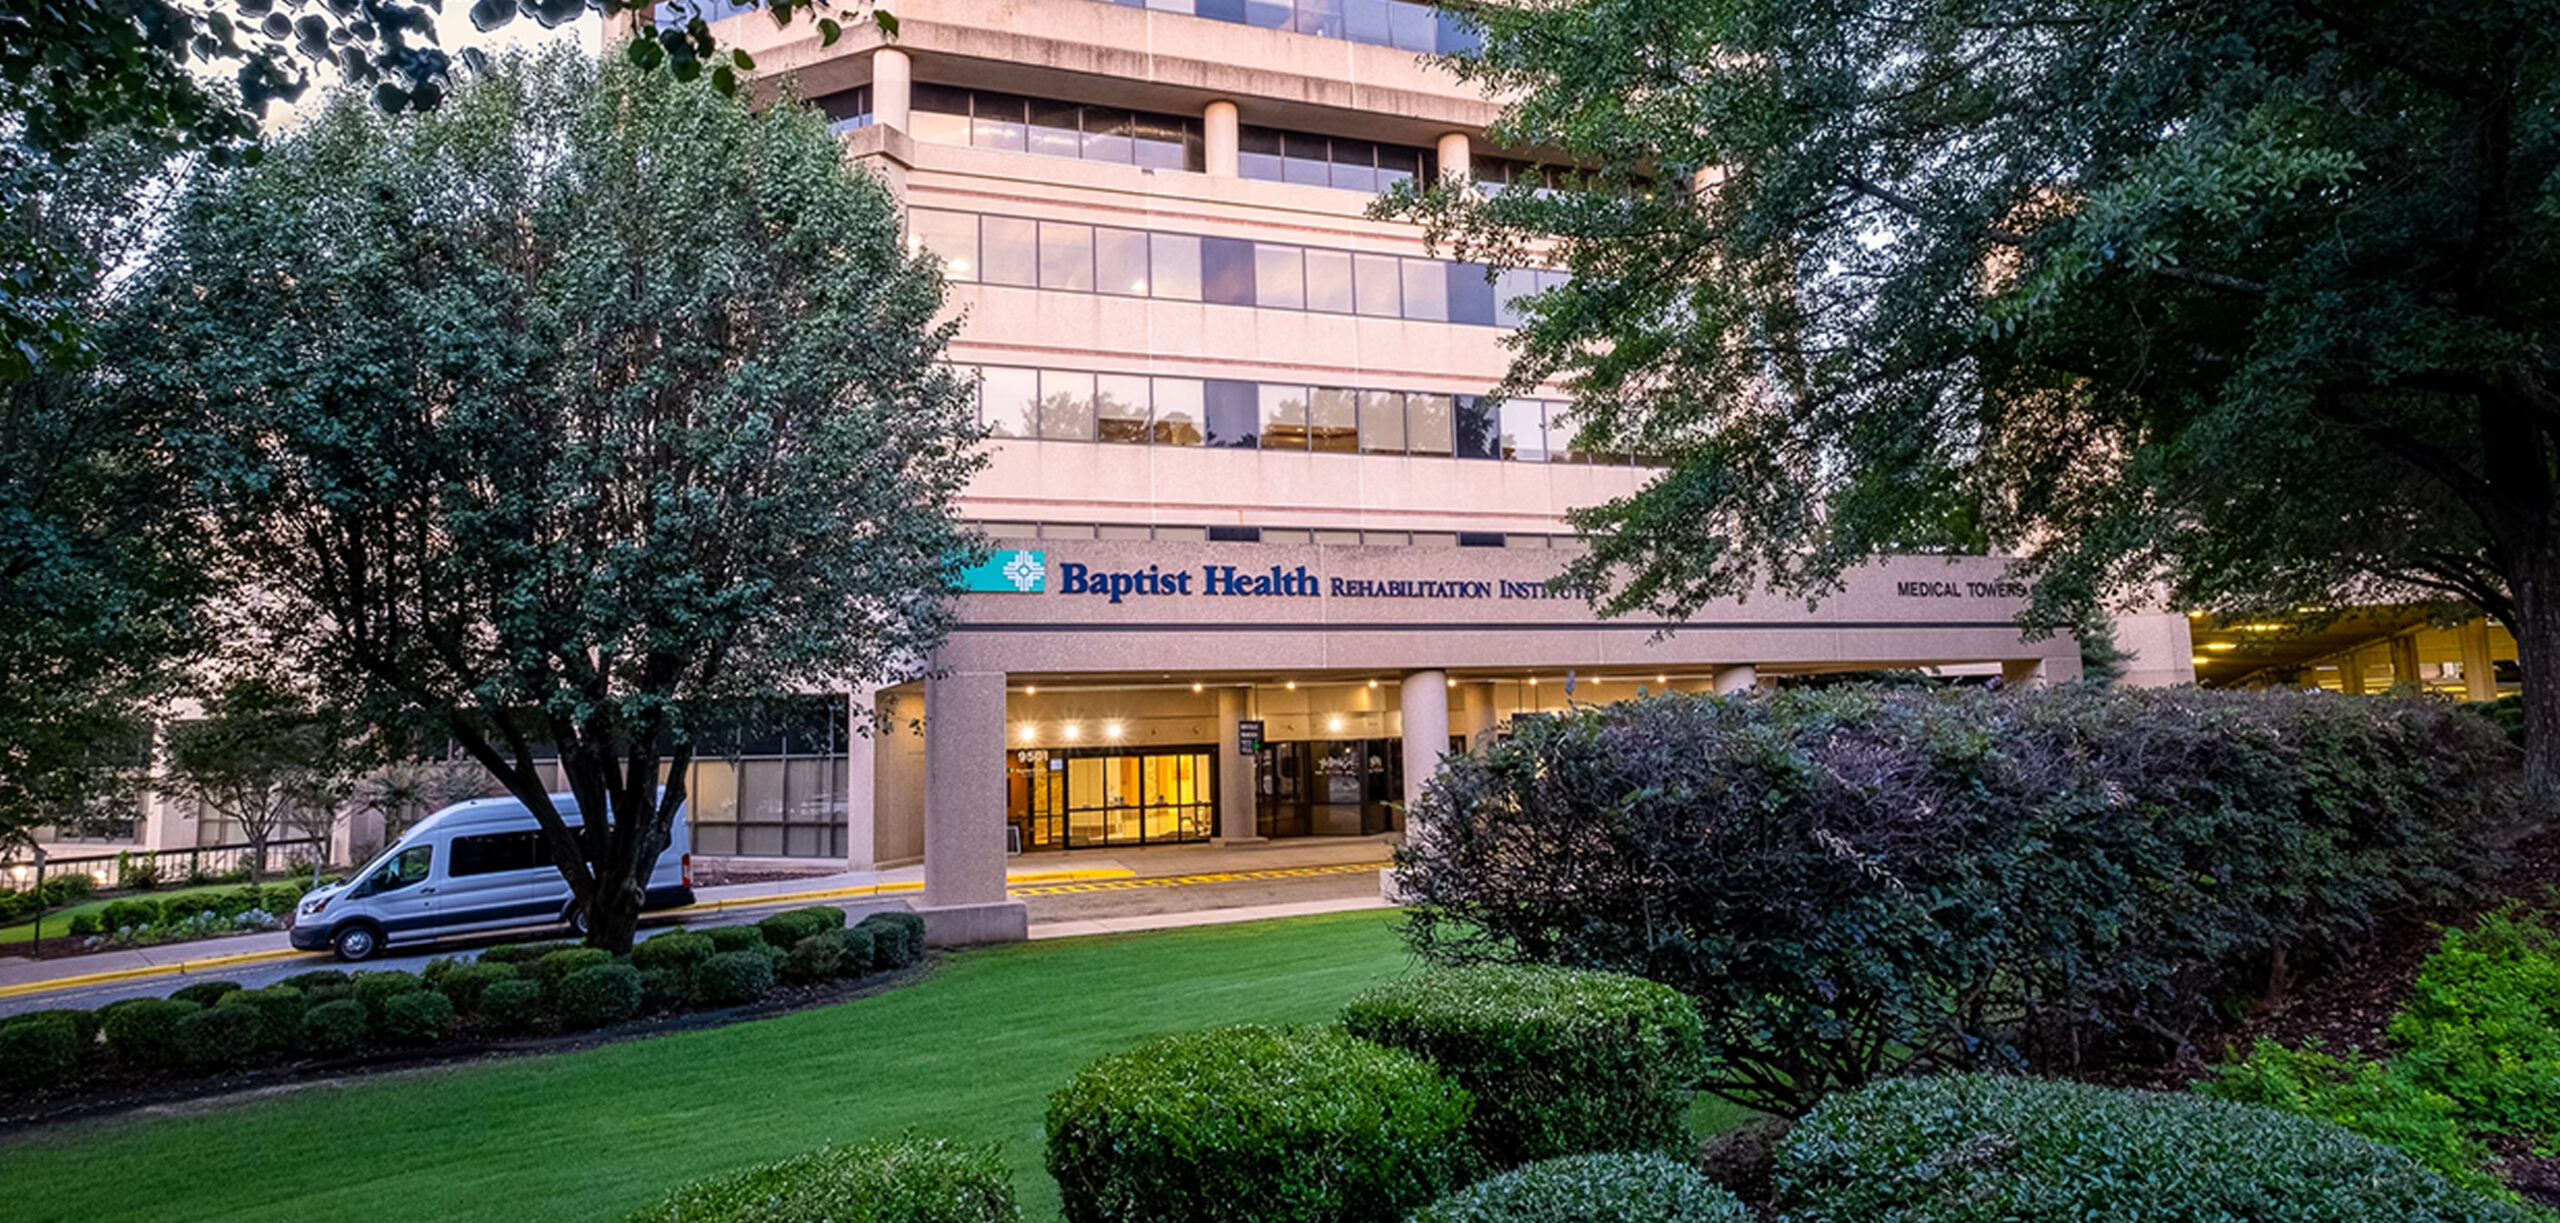 Baptist Health Rehabilitation Institute